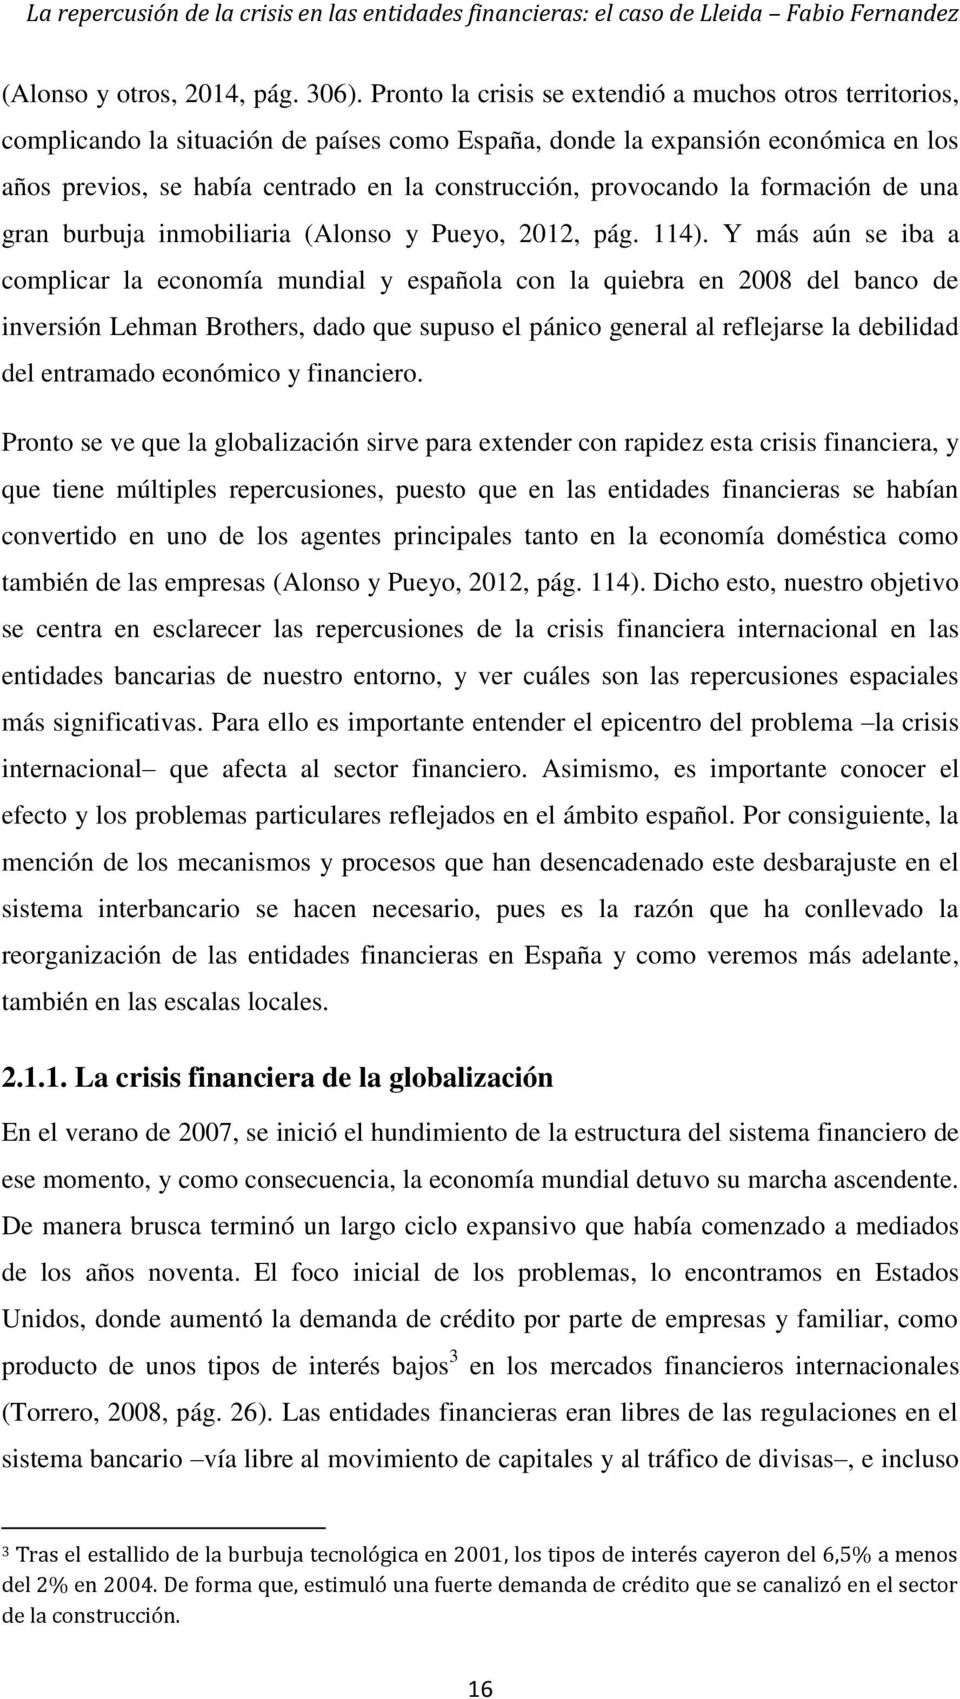 provocando la formación de una gran burbuja inmobiliaria (Alonso y Pueyo, 2012, pág. 114).